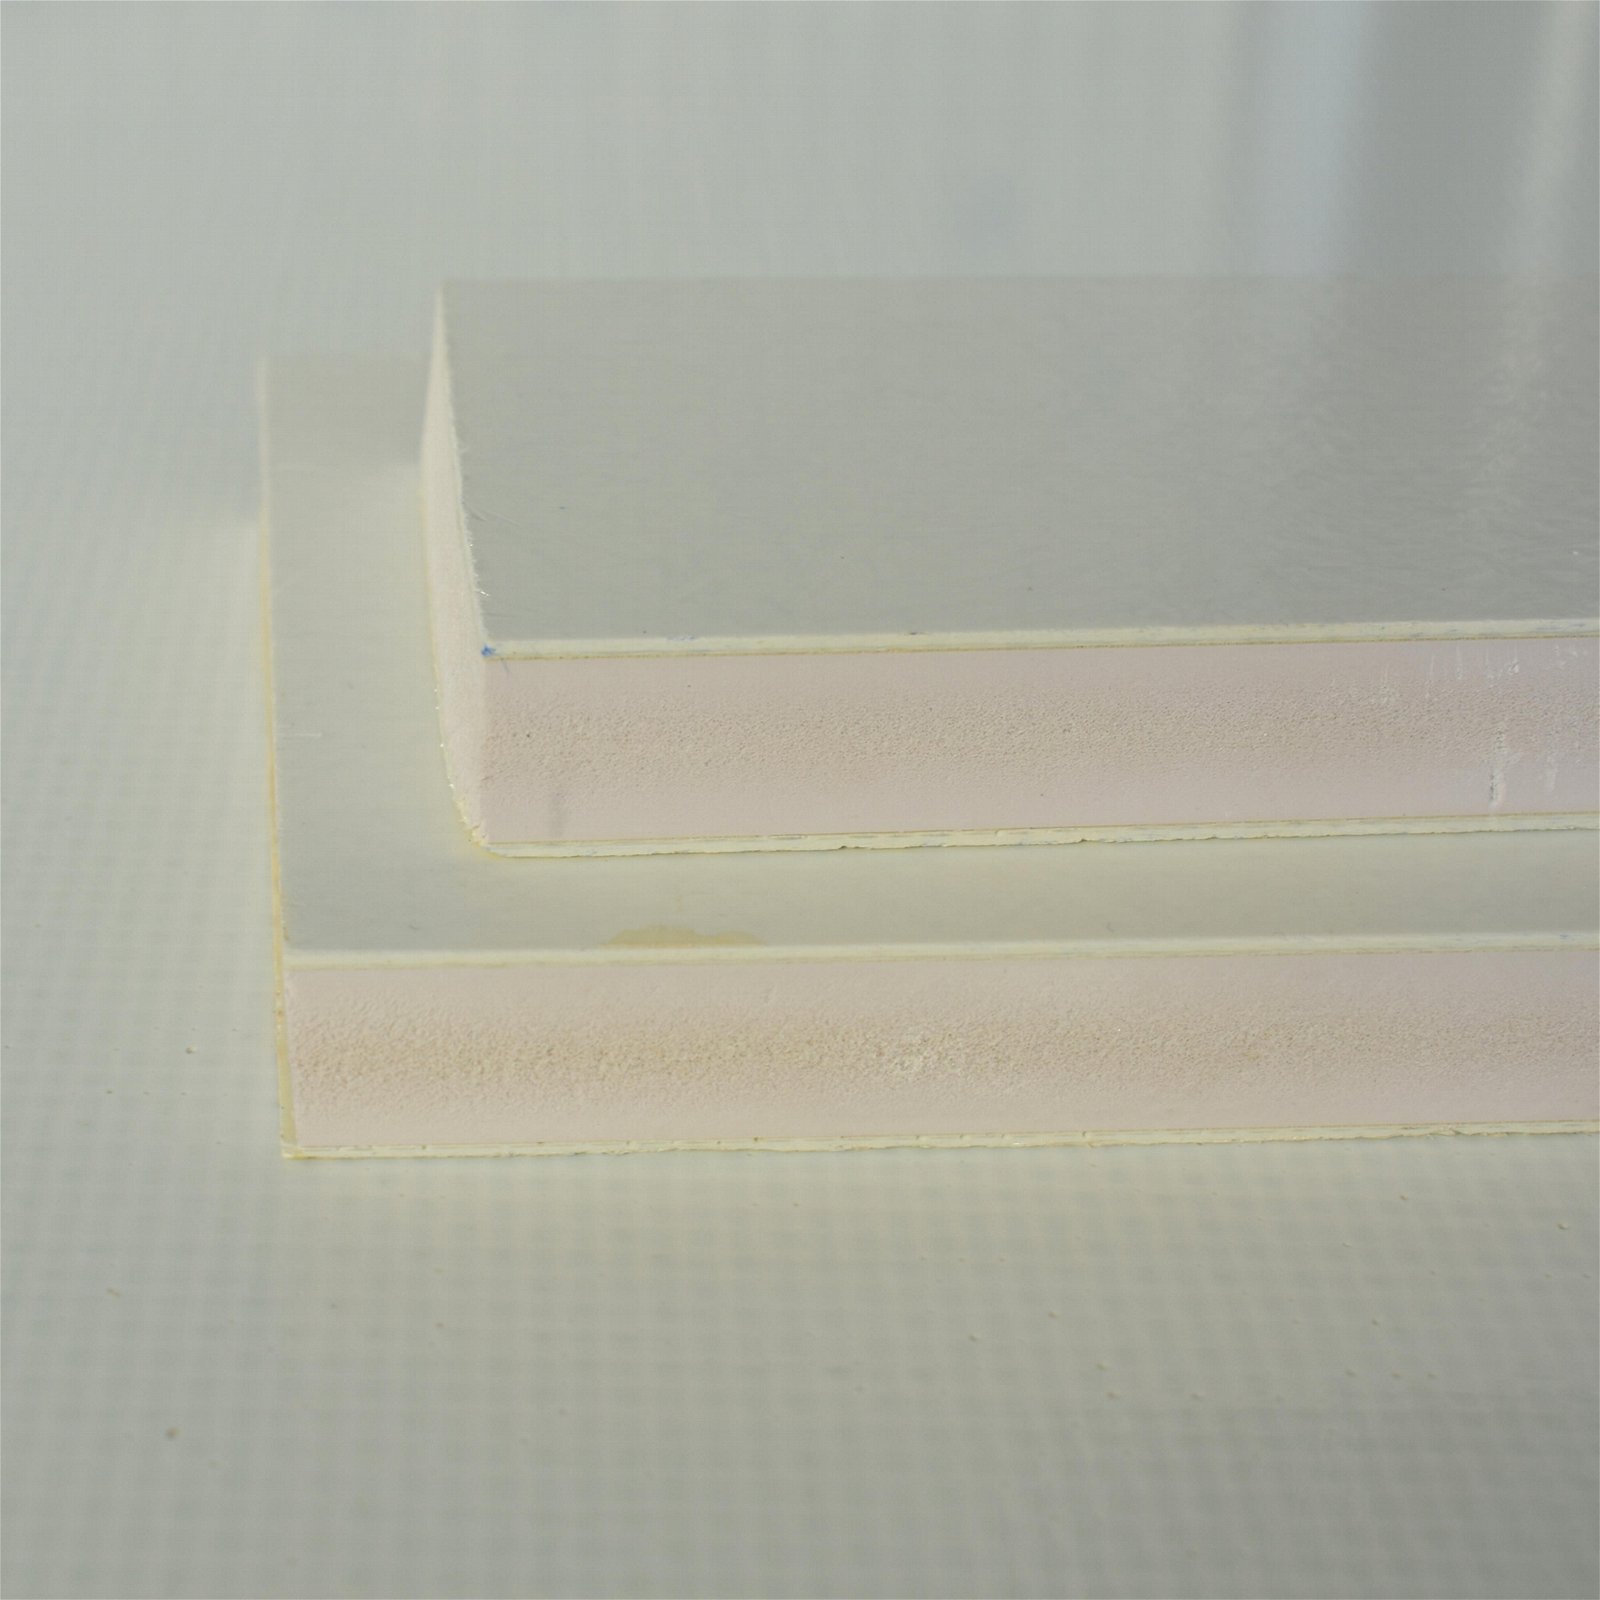 玻璃钢PVC攀岩板 玻璃钢夹芯板 PU夹芯一体板 3